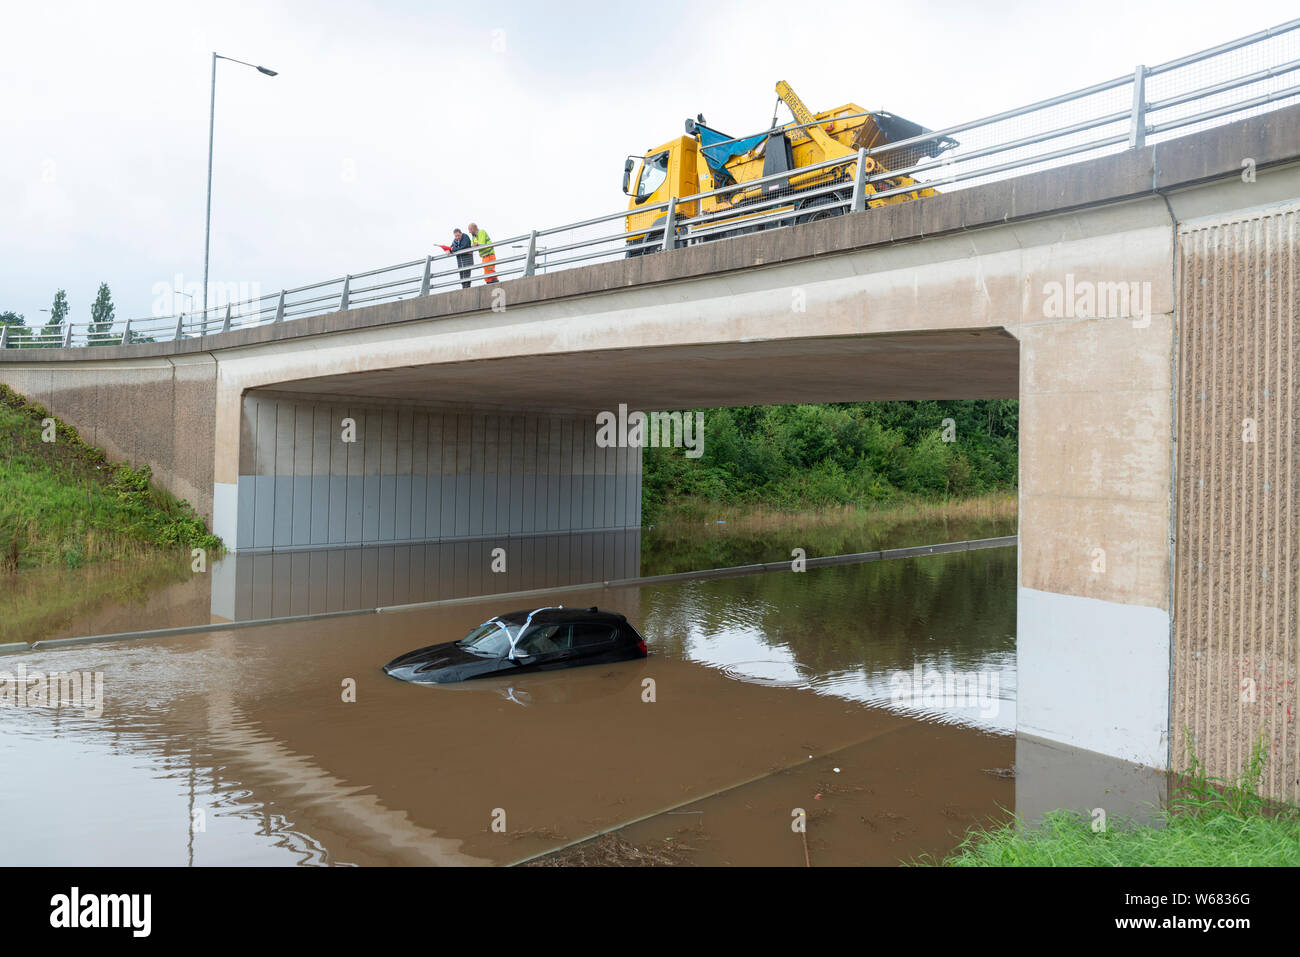 En Handforth, Reino Unido. El 31 de julio, 2019. Un automóvil BMW es abandonado en las aguas de la inundación en el aeropuerto de Manchester A555 carretera de alivio tras las fuertes lluvias durante días consecutivos. Crédito: Russell Hart/Alamy Live News Foto de stock